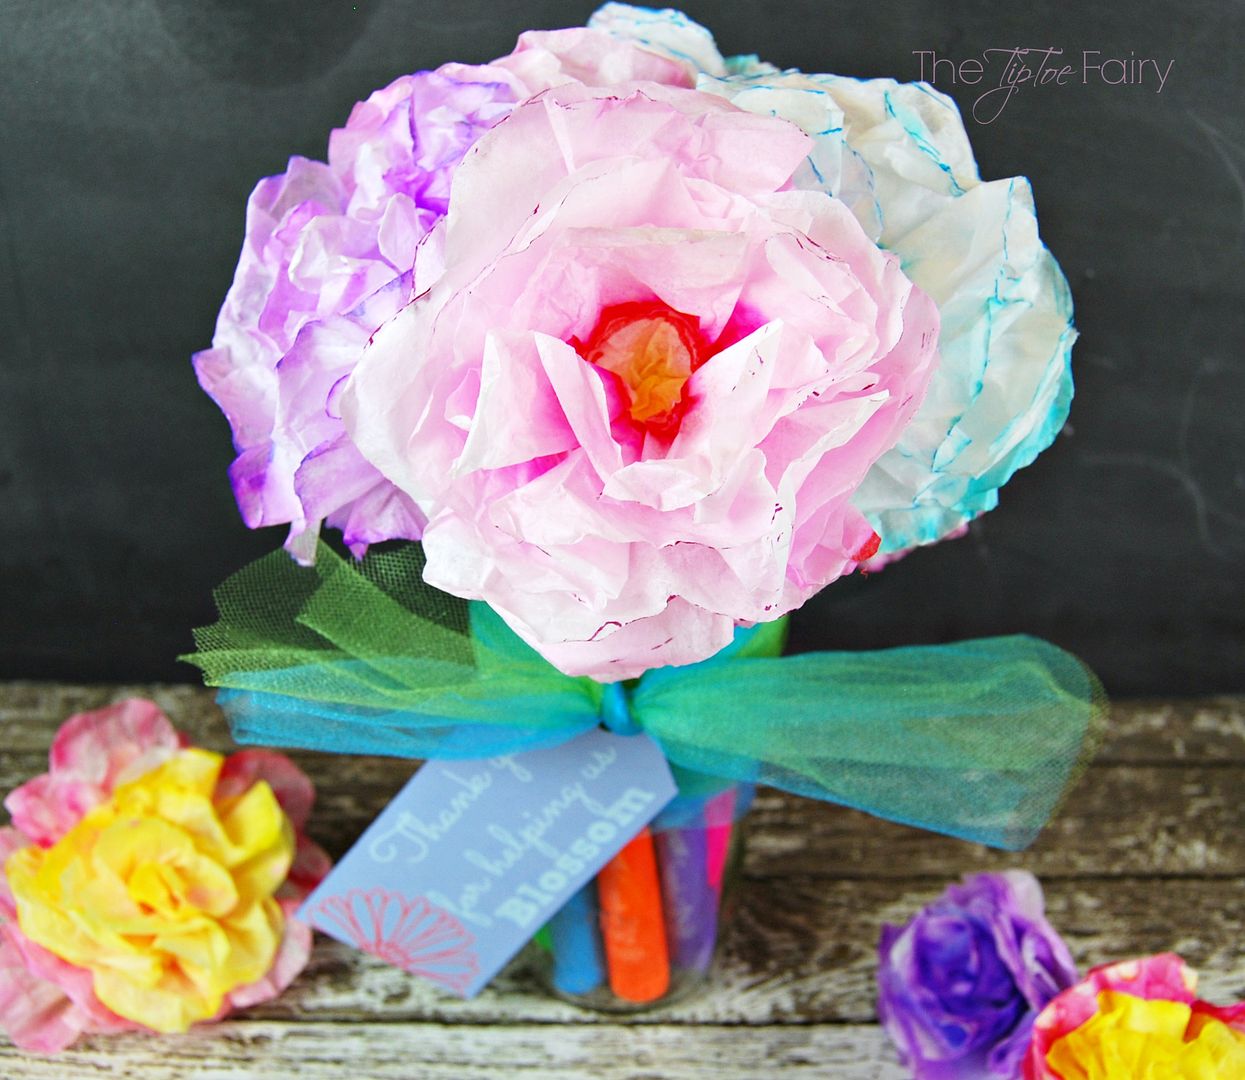 Coffee Filter Flower Pen Bouquet | The TipToe Fairy #InspireStudents #TeachersChangeLives #pmedia #ad #tutorial #teachergifts #crafts